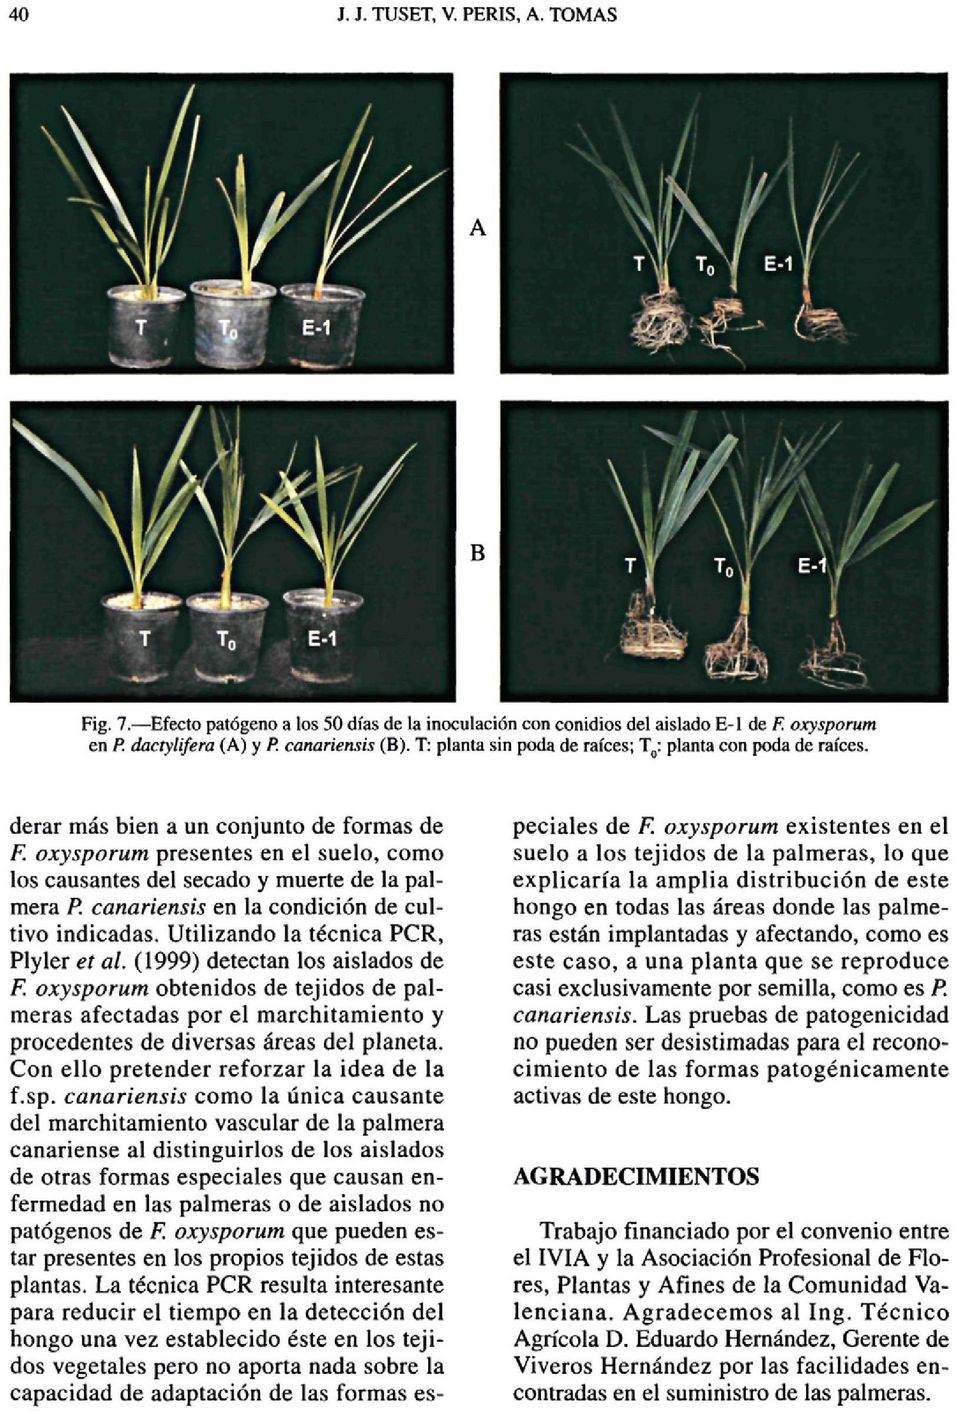 derar más bien a un conjunto de formas de F oxysporum presentes en el suelo, como los causantes del secado y muerte de la palmera R canariensis en la condición de cultivo indicadas.